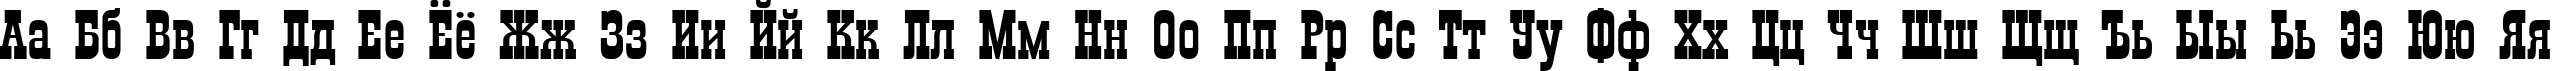 Пример написания русского алфавита шрифтом a_Gildia Bold